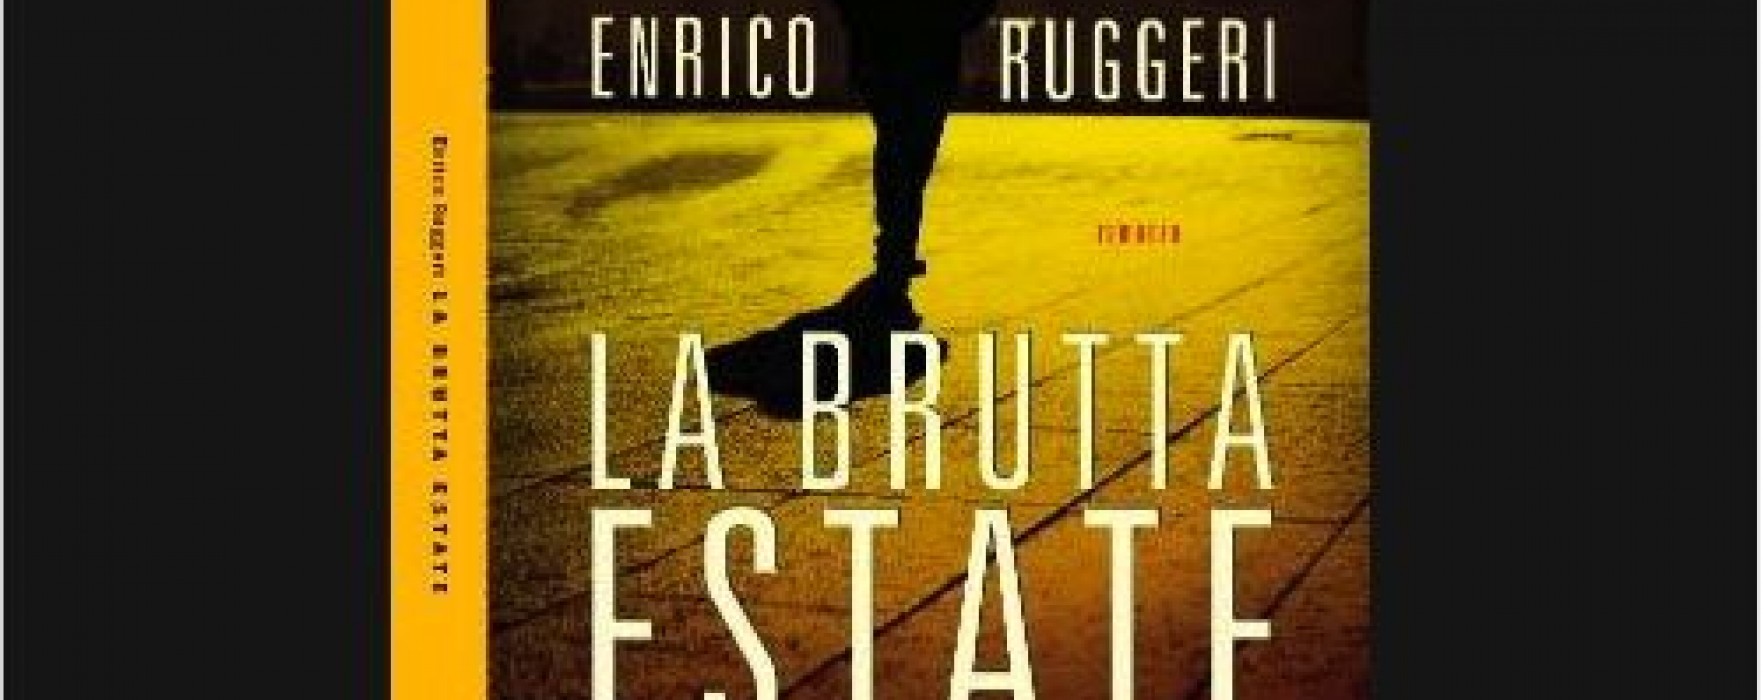 Il nuovo noir di Enrico Ruggeri racconta “La brutta estate” di un uomo solo